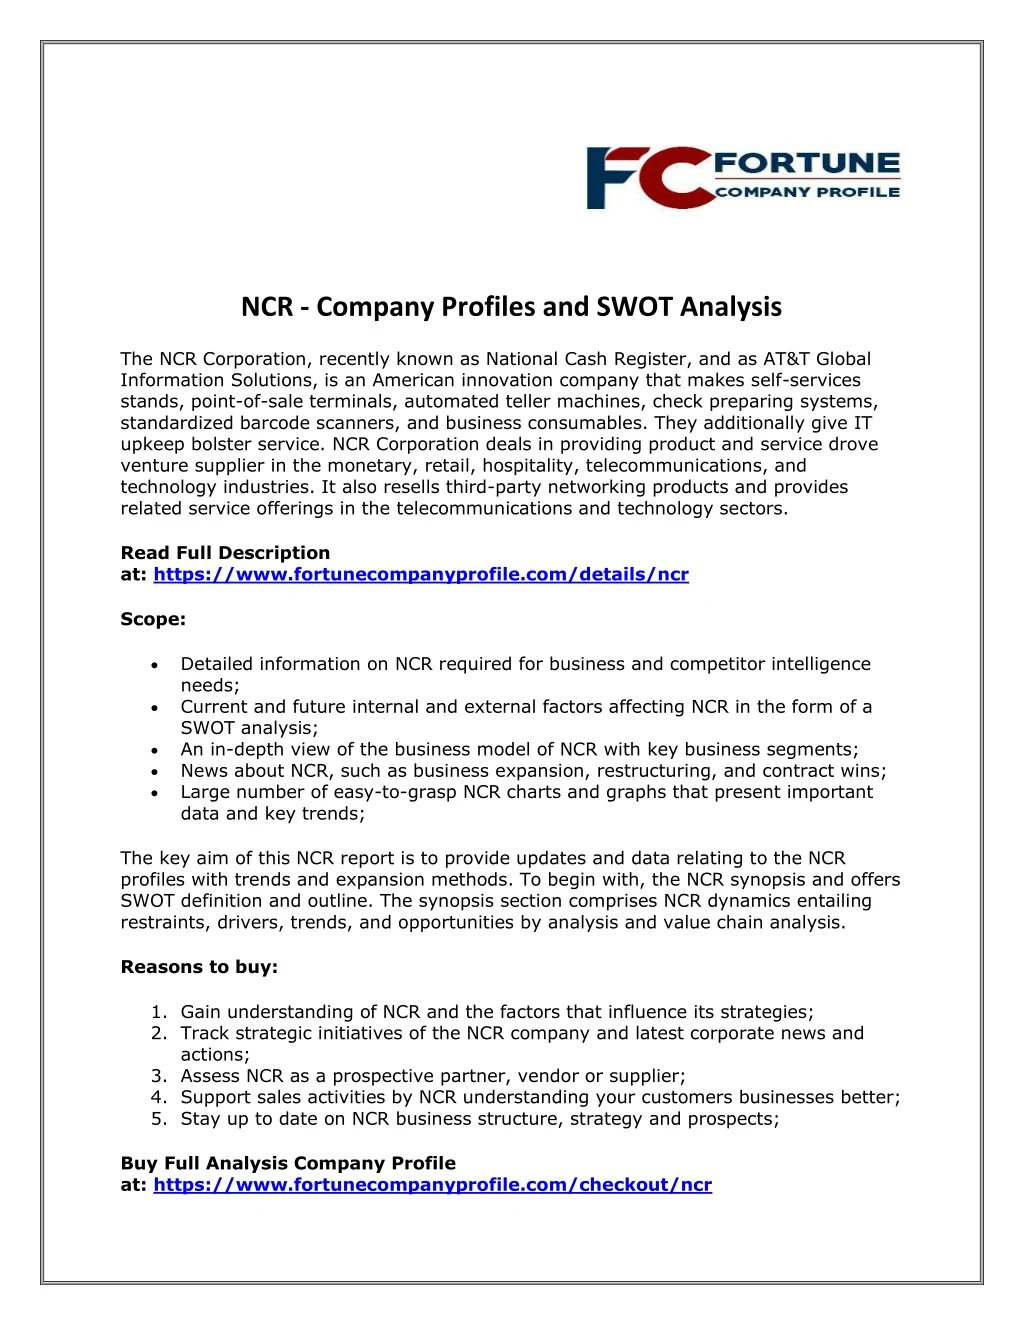 ncr company profiles and swot analysis